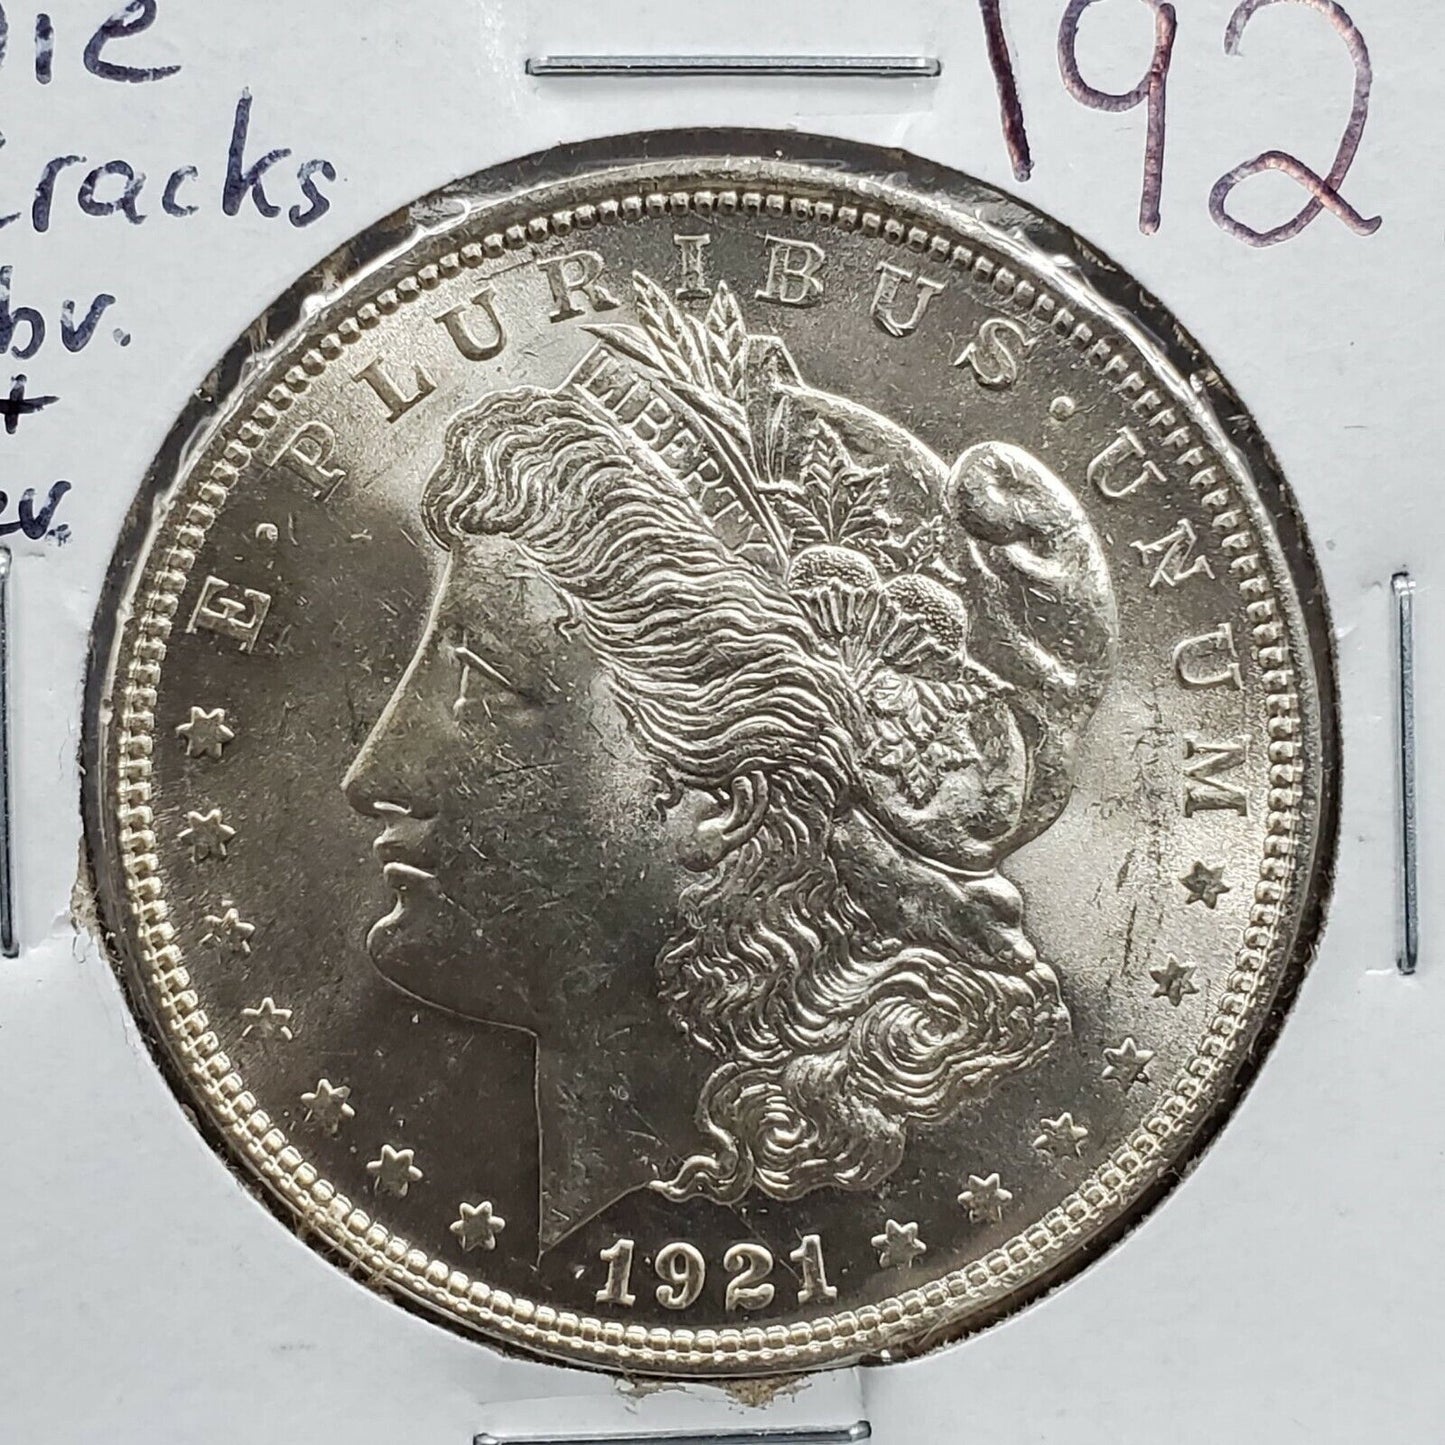 1921 P Morgan Silver Eagle Dollar Coin GEM BU UNC w/ Die Cracks VAM 100 YEARS